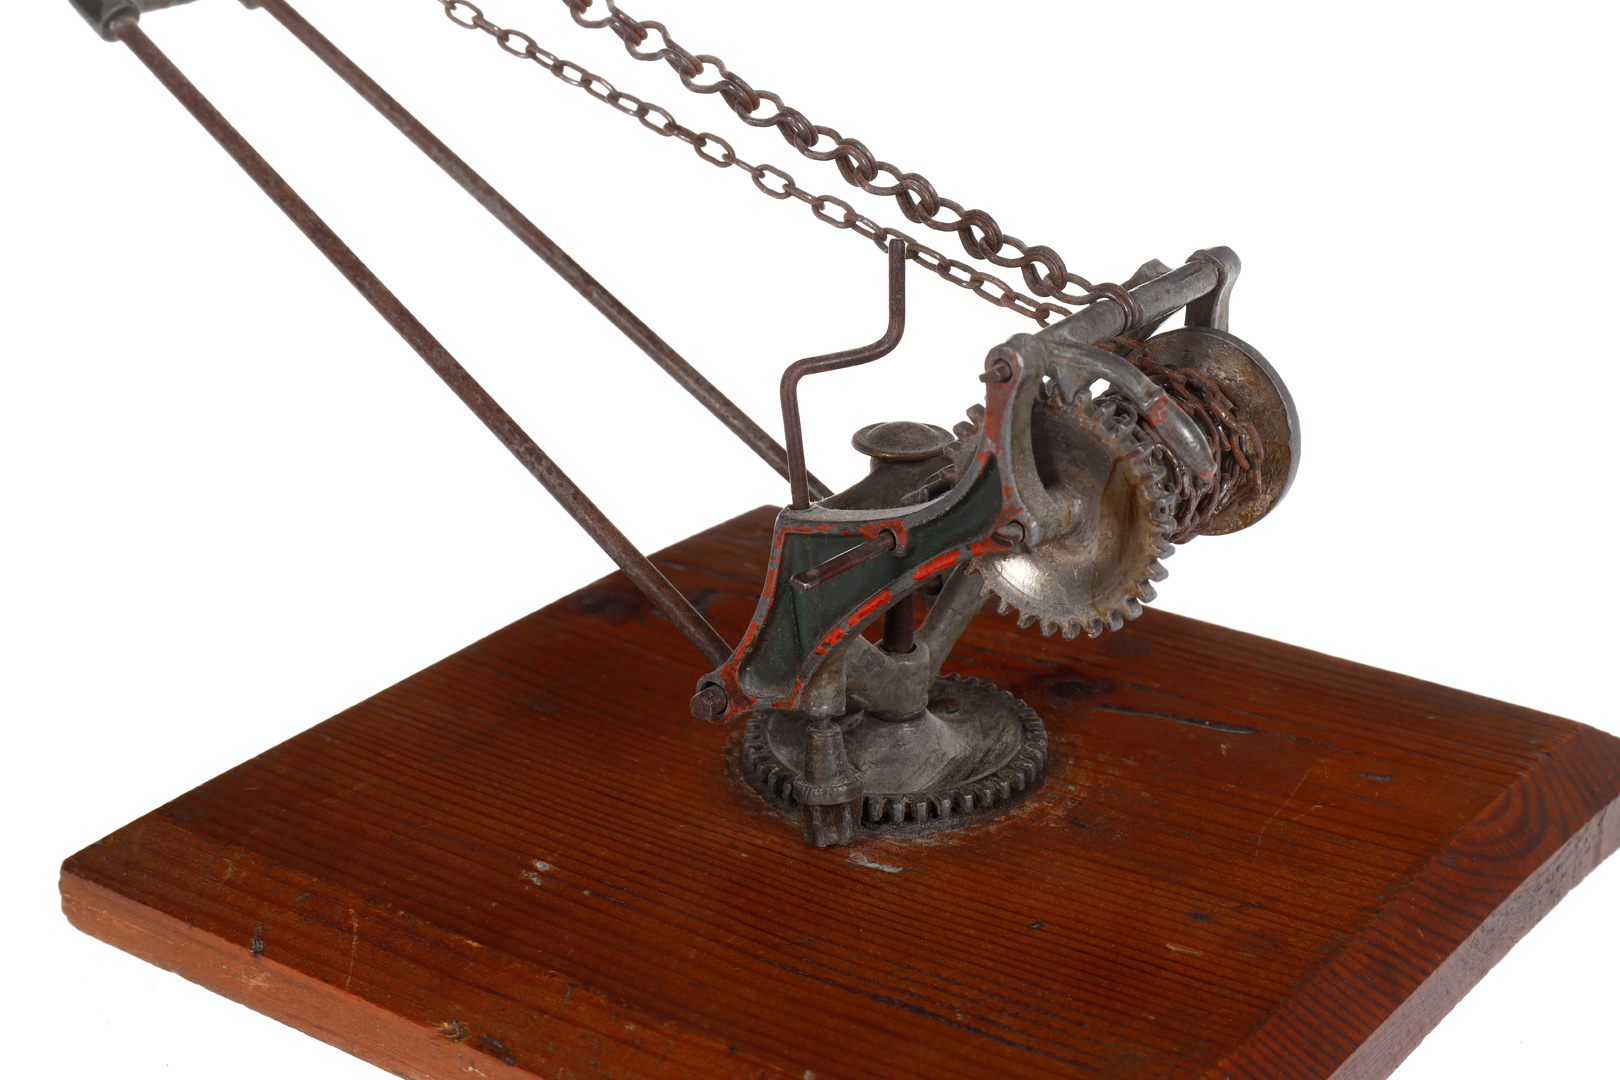 Uralt-Gitter-Drehkran, handlackiert, mit Handkurbel, Kette und Kugelhaken, auf Holzsockel, - Image 5 of 6